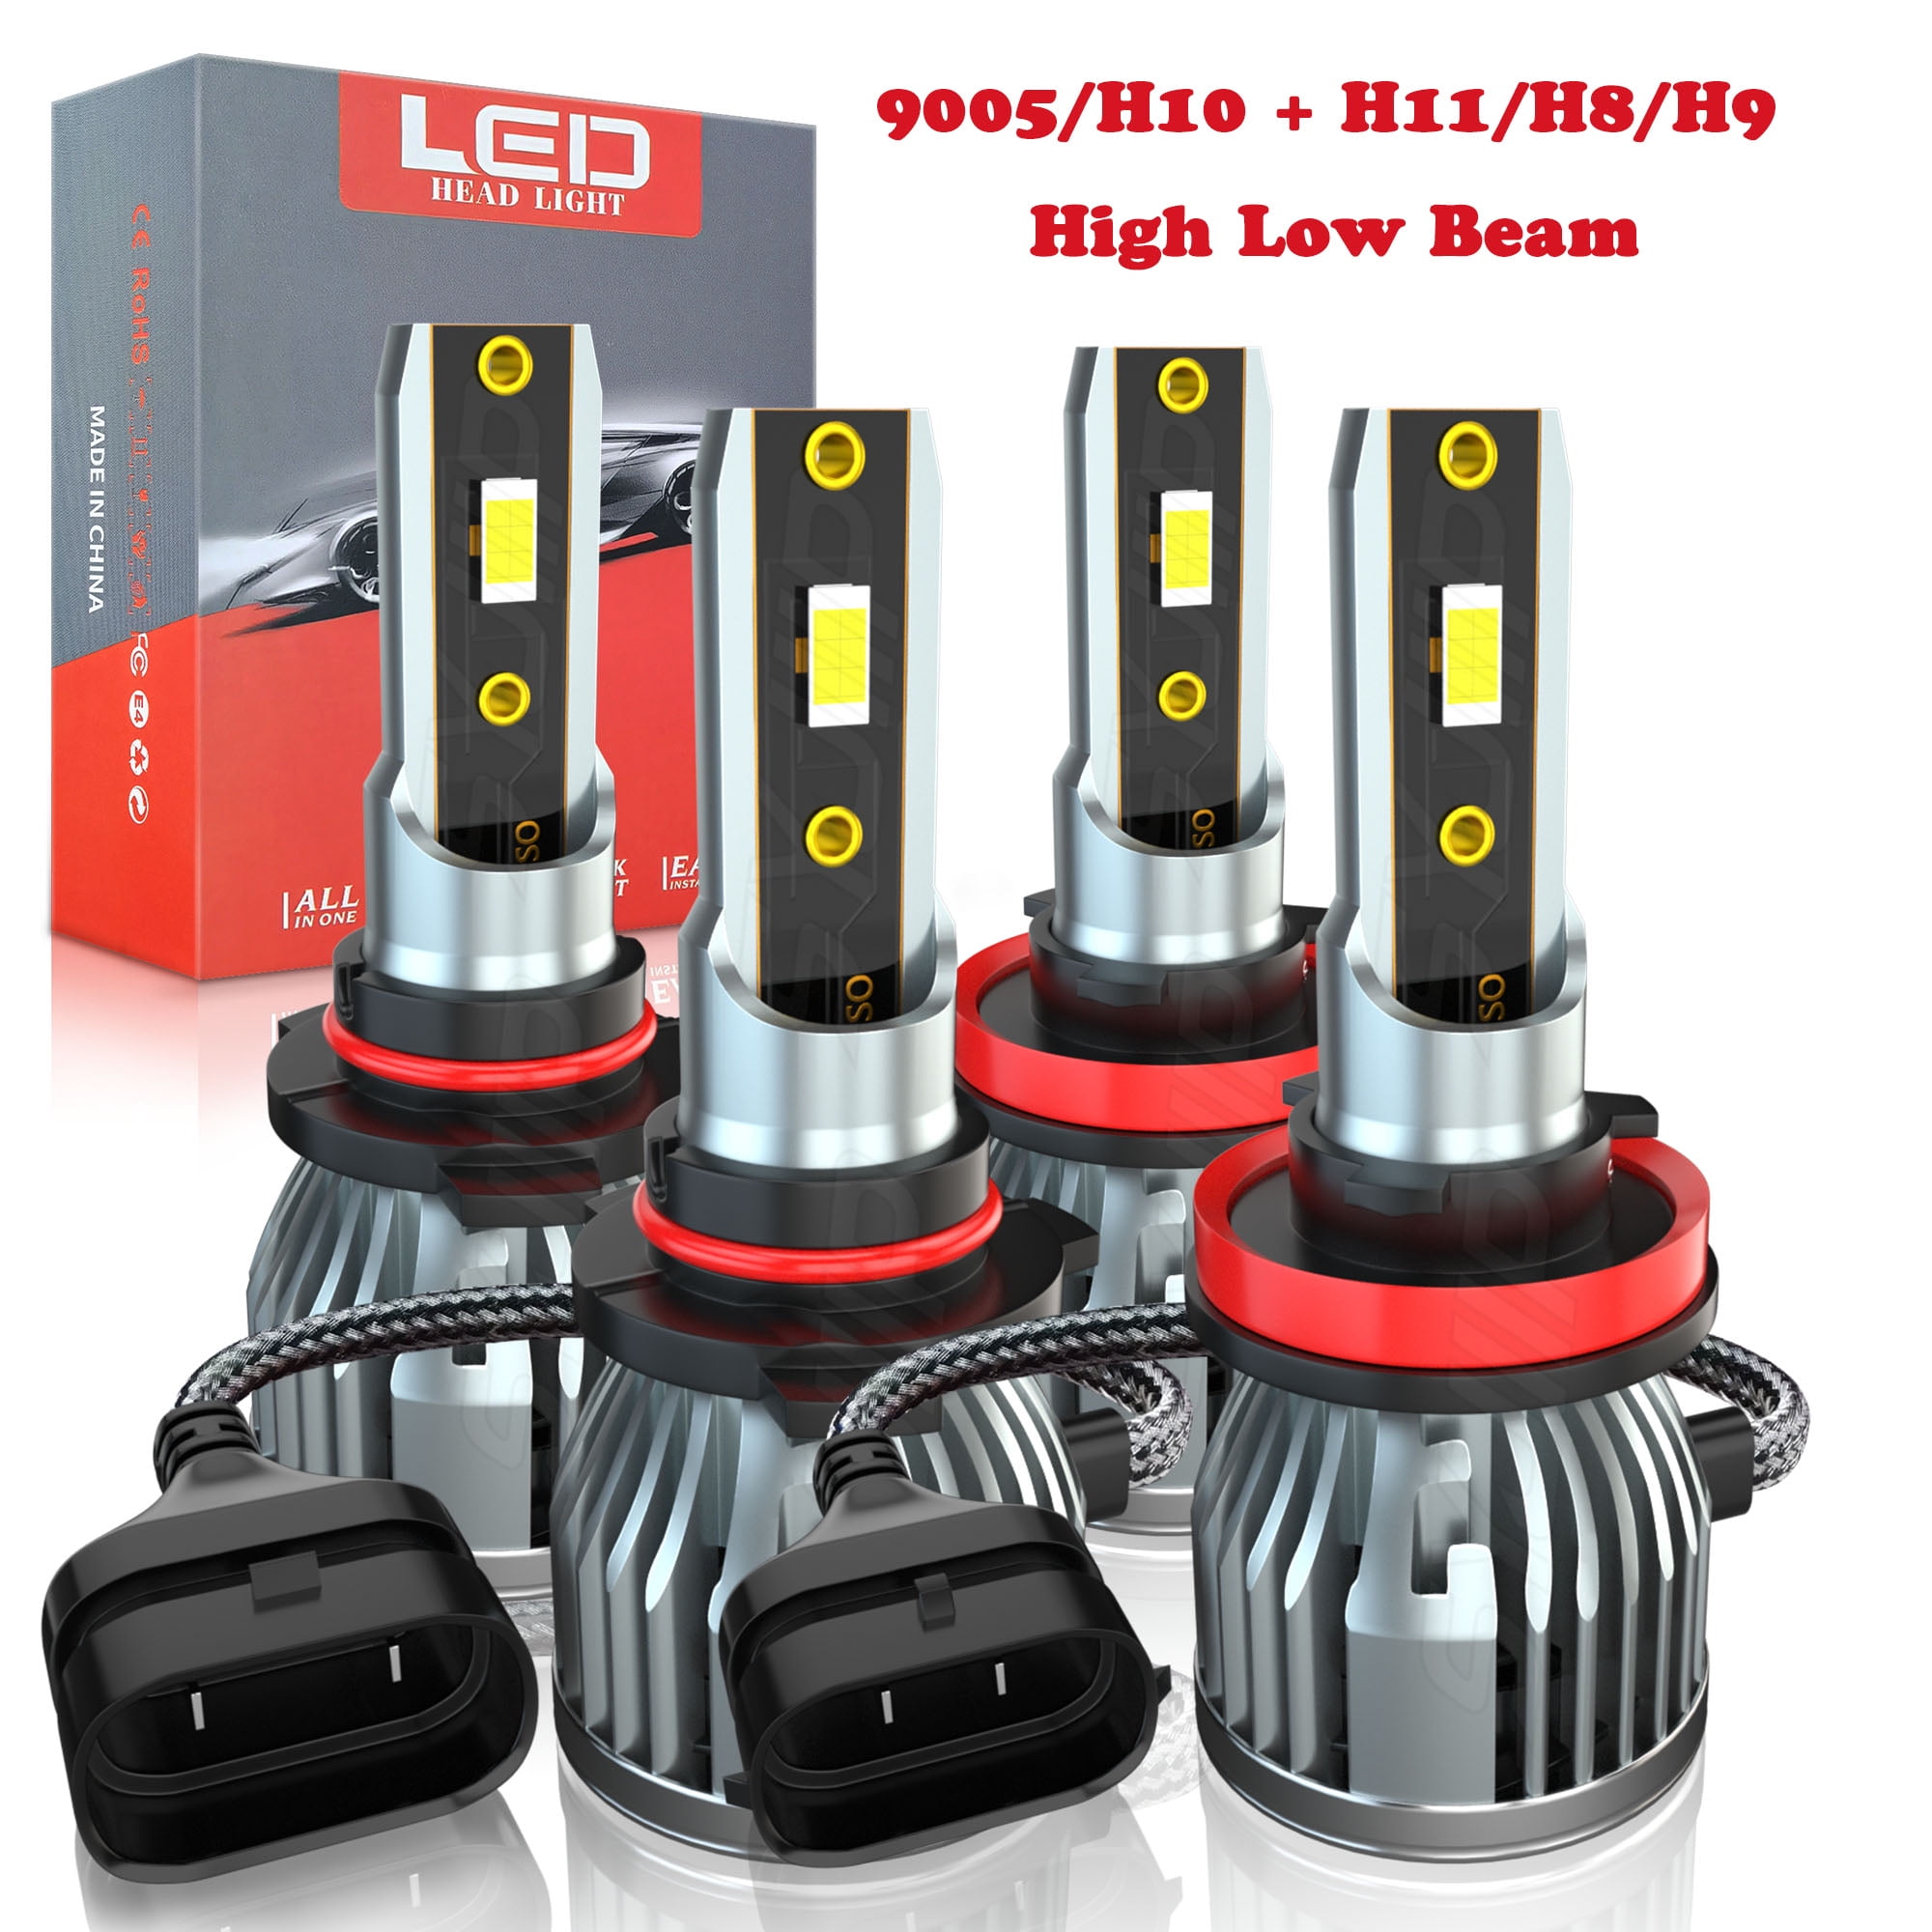 H1 LED H7 LED 20000LM H8 HB3 9005 HB4 H11 Led Headlights Bulbs